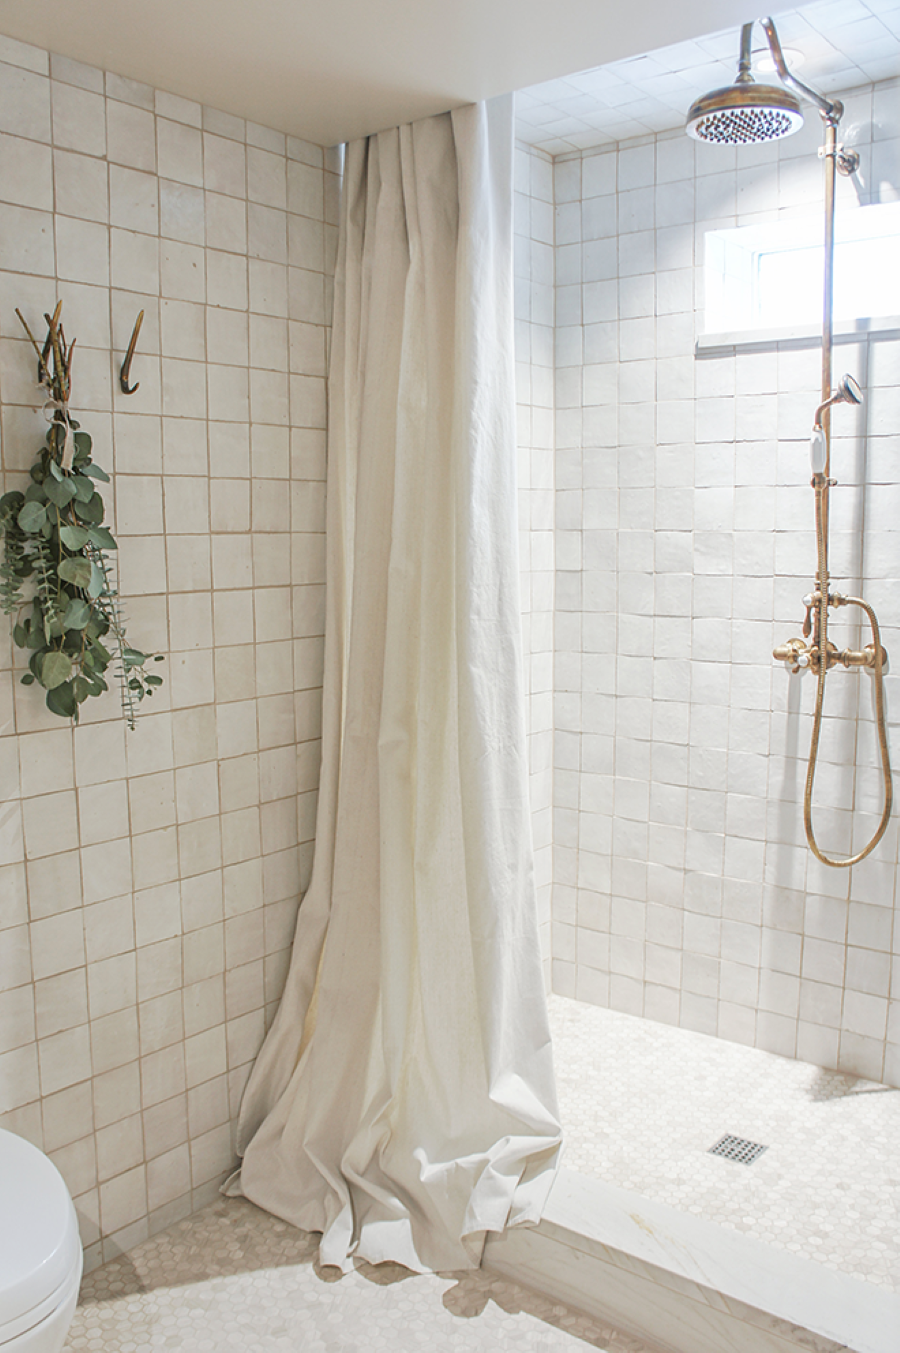 Baño moderno con azulejos cuadrados color beige. Cortina de tela blanca, larga. Grifería de cobre. Ramas de eucaliptus secas colgando.